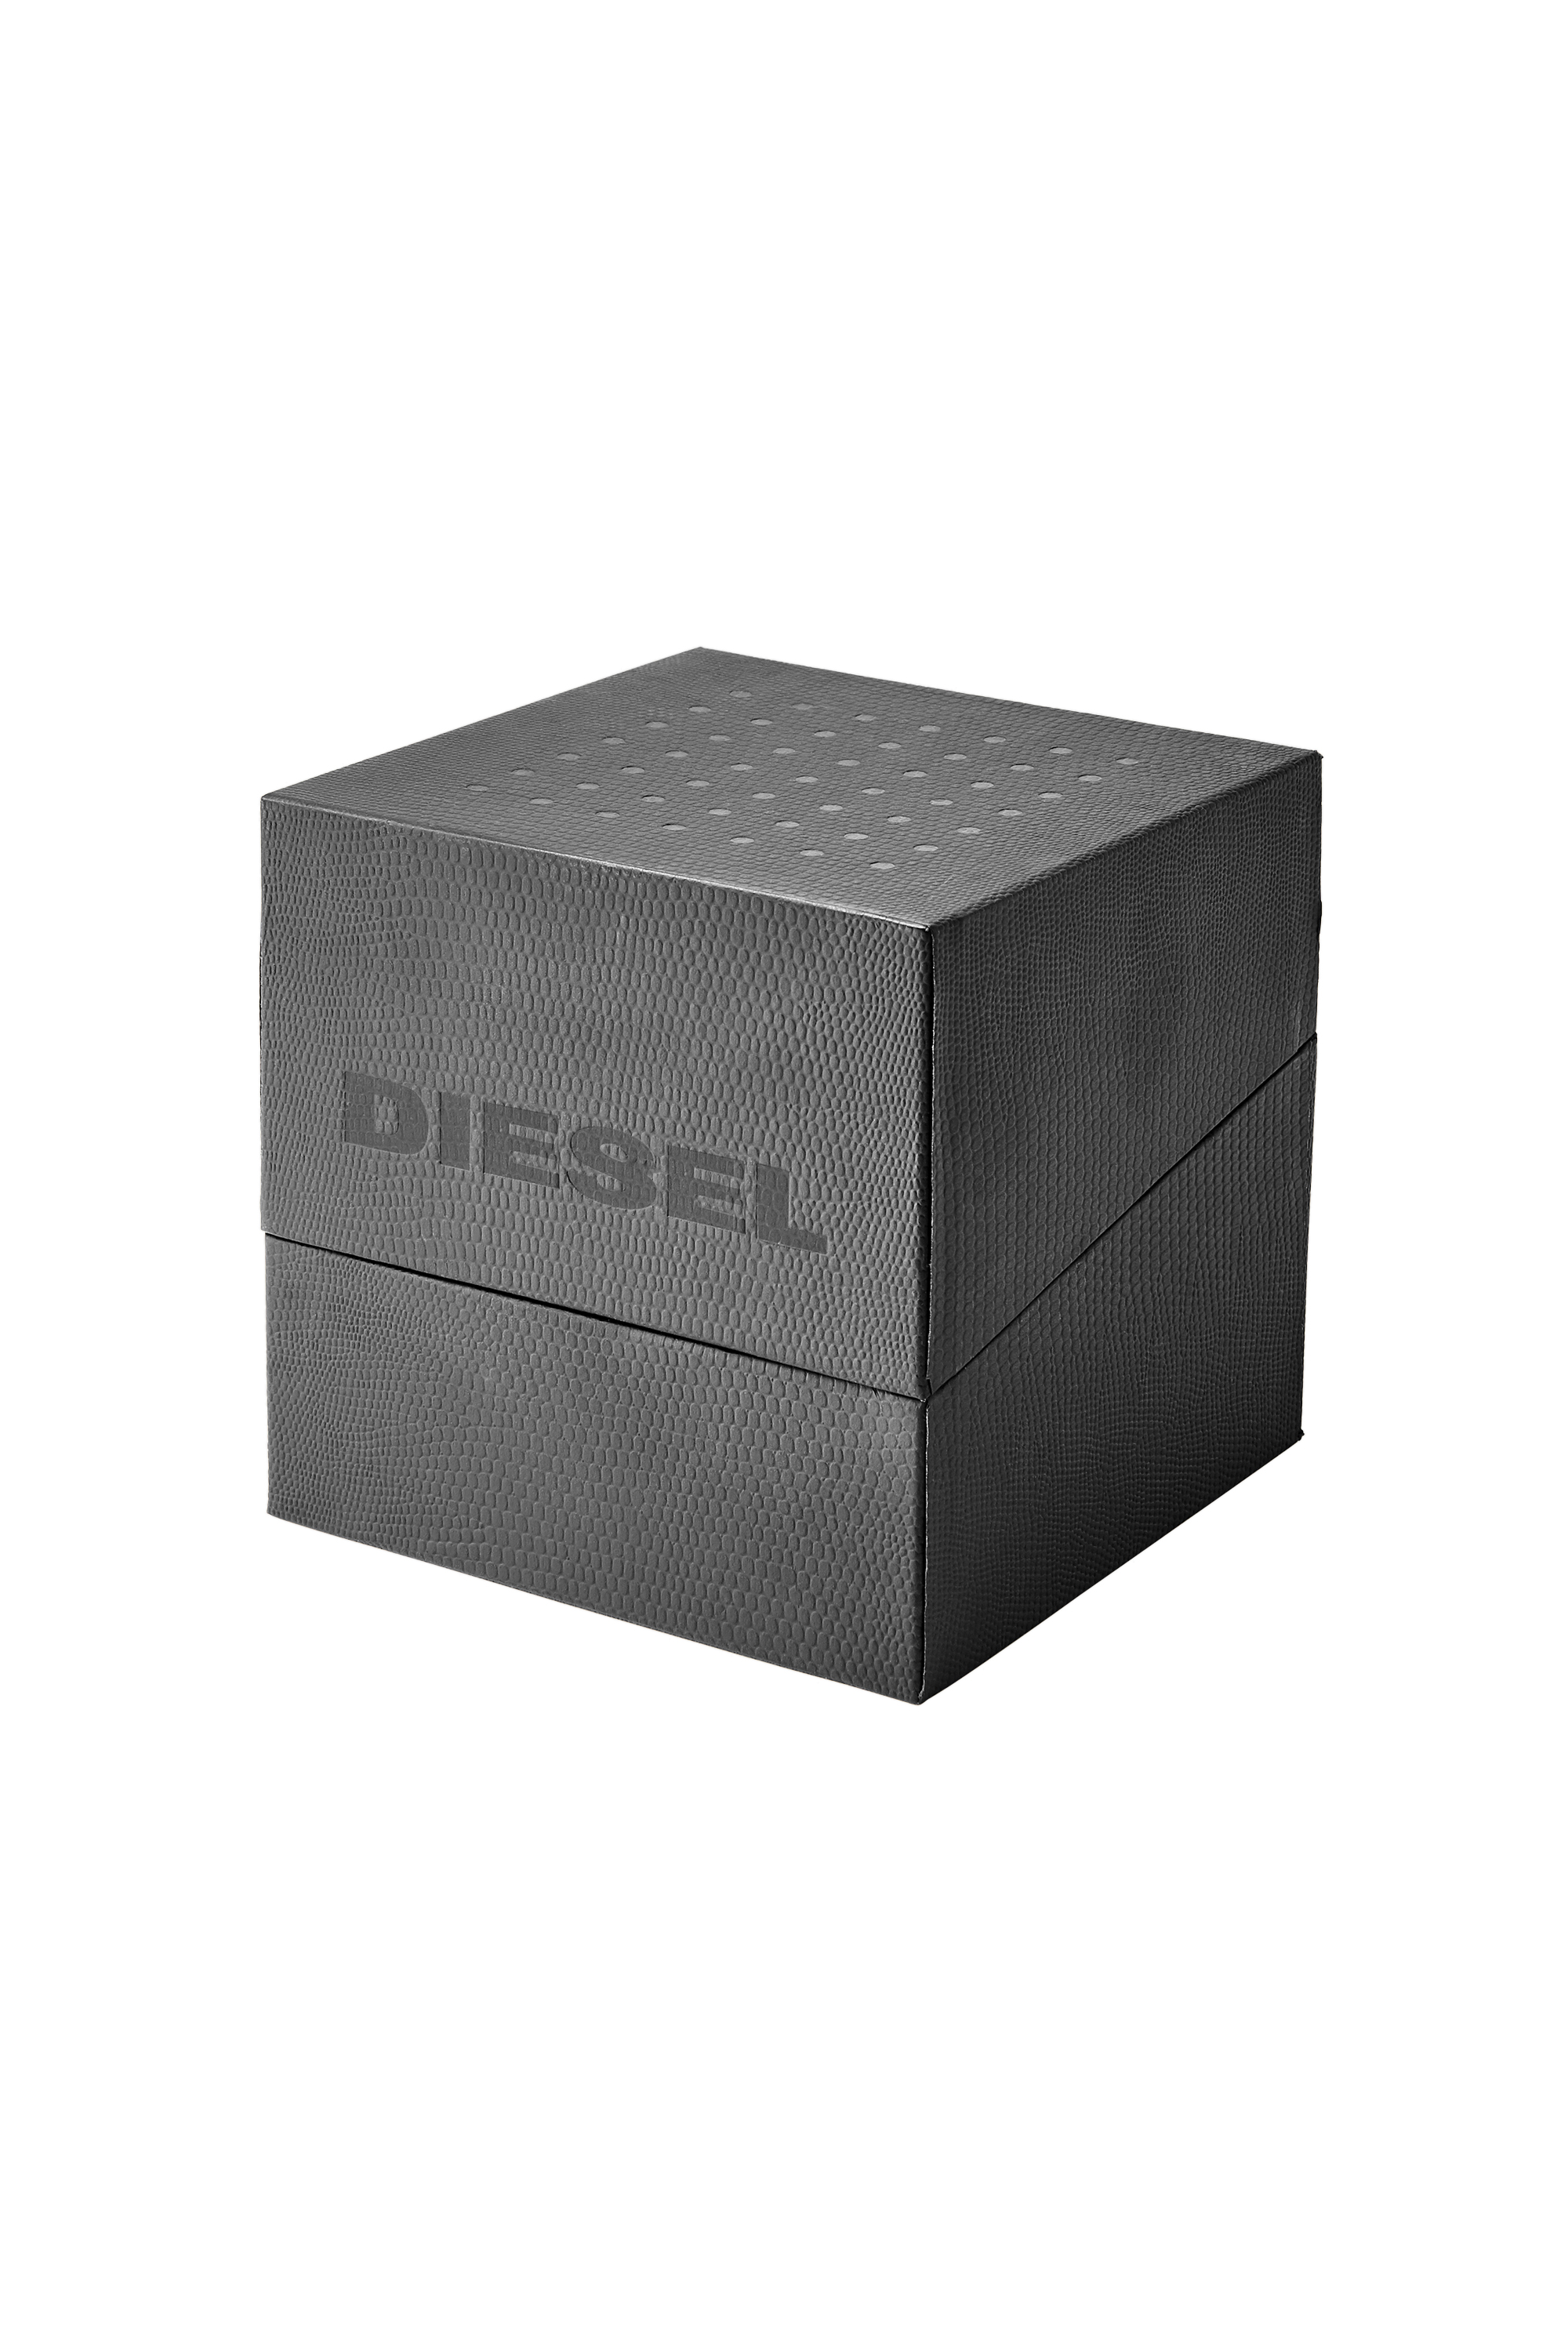 Diesel - DZ4525, Black/Gold - Image 4